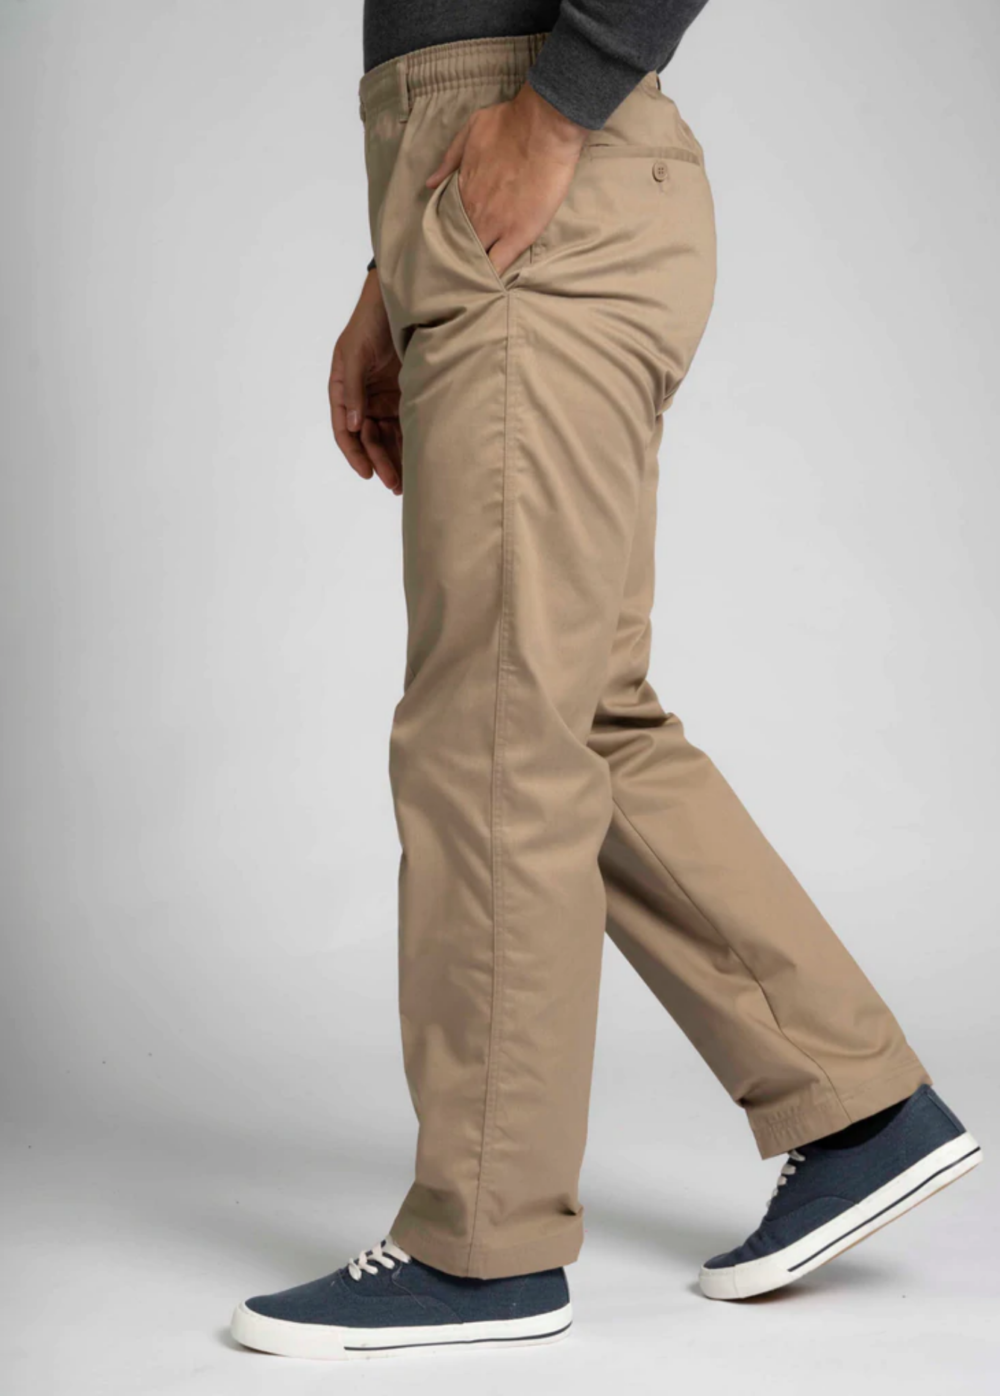 Men's Full Elastic Waist Pull-On Pants with Mock Fly